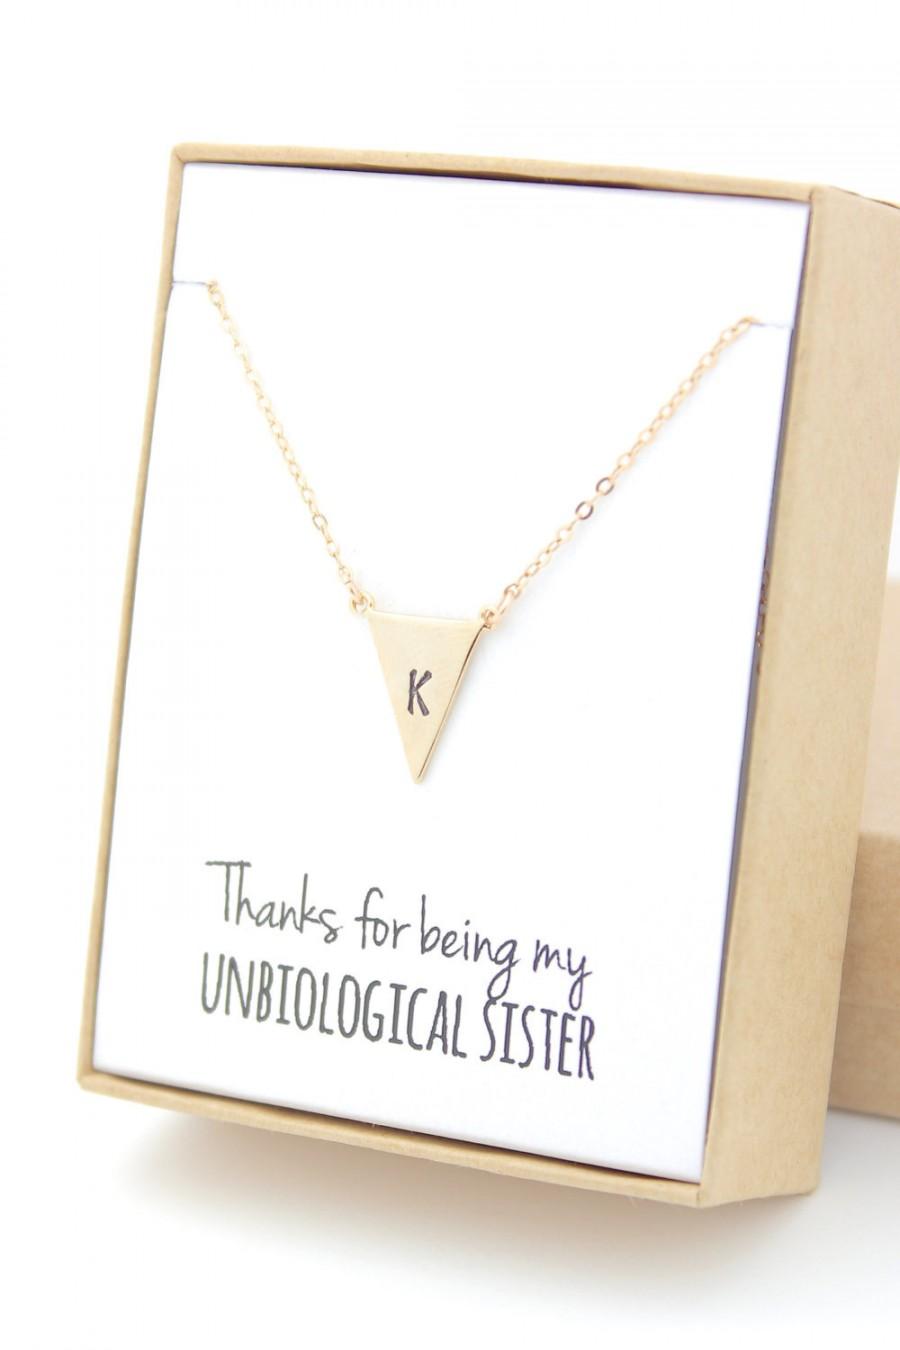 زفاف - Gold Triangle Letter Necklace - Bridesmaid Gift Jewelry - Unbiological Sister - Personalized Necklace - Initial Letter - Larger Triangle